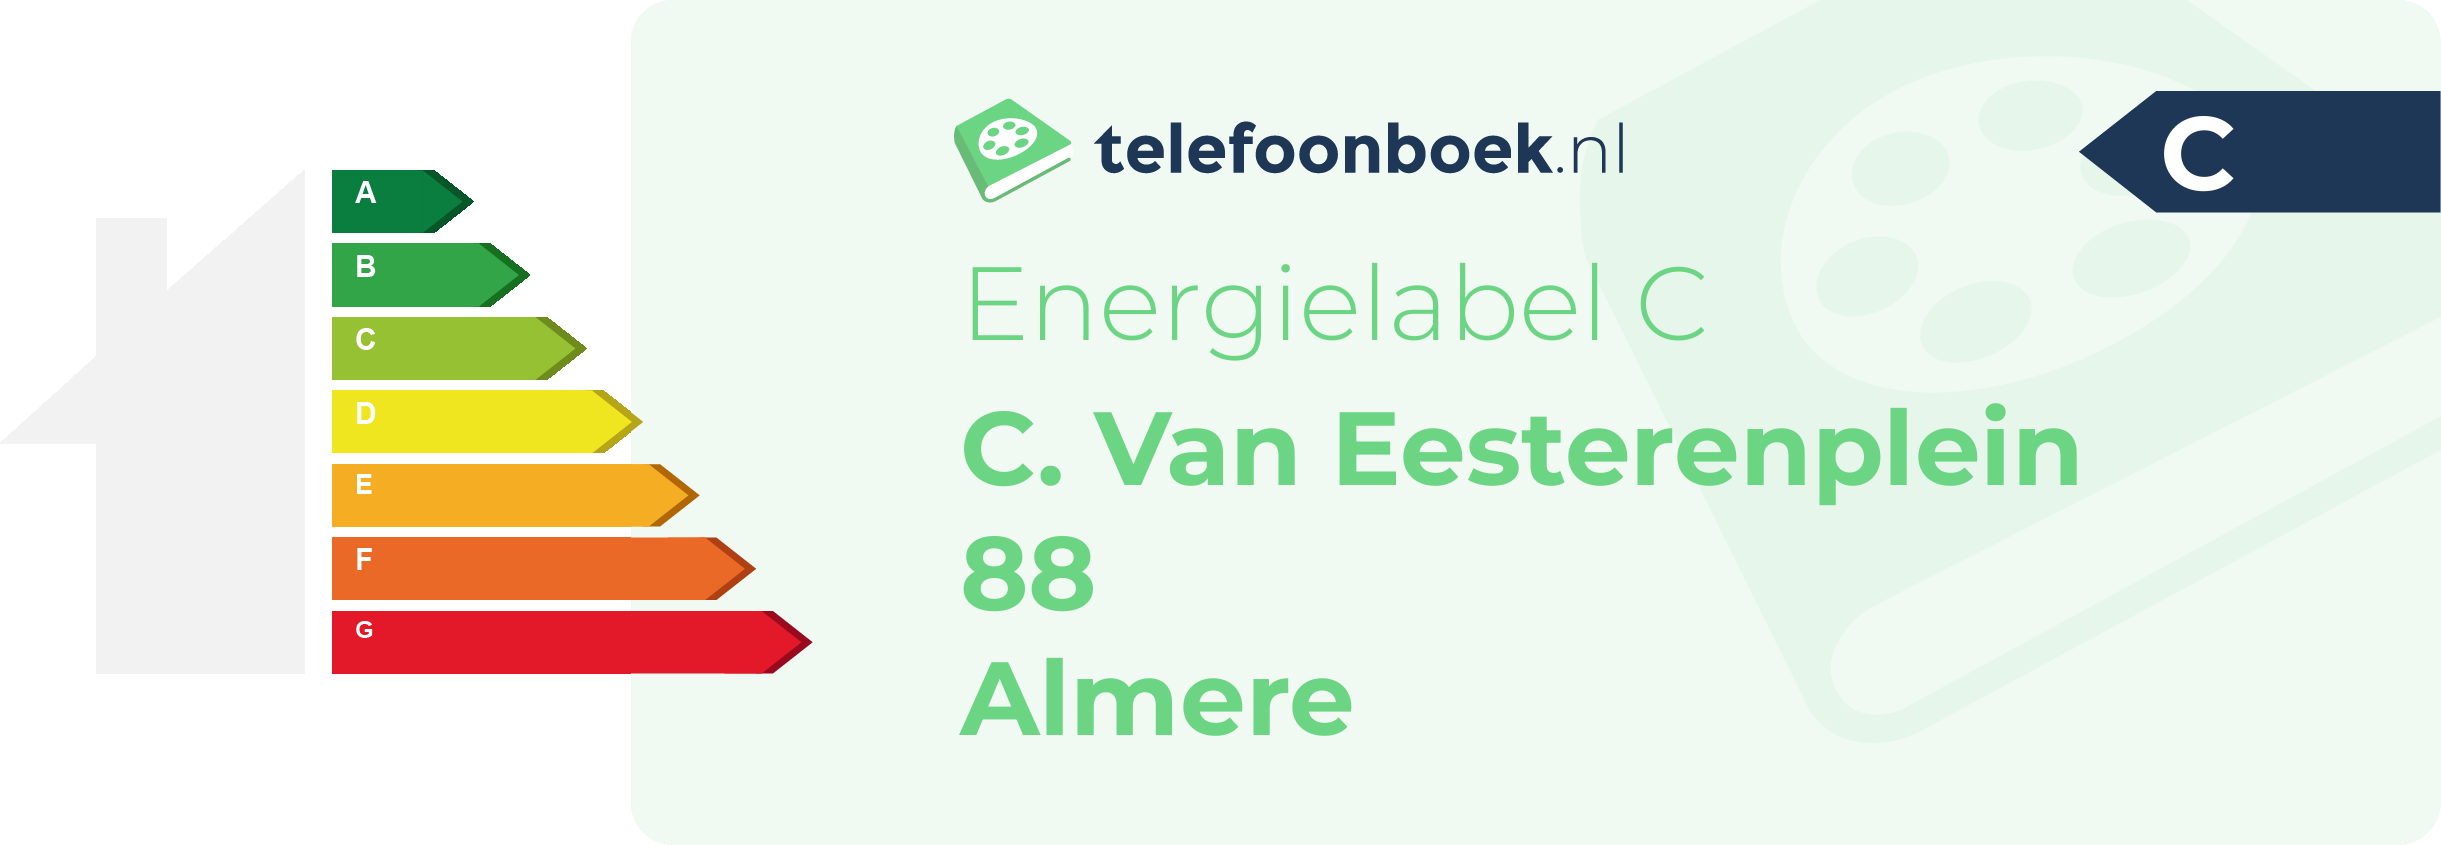 Energielabel C. Van Eesterenplein 88 Almere